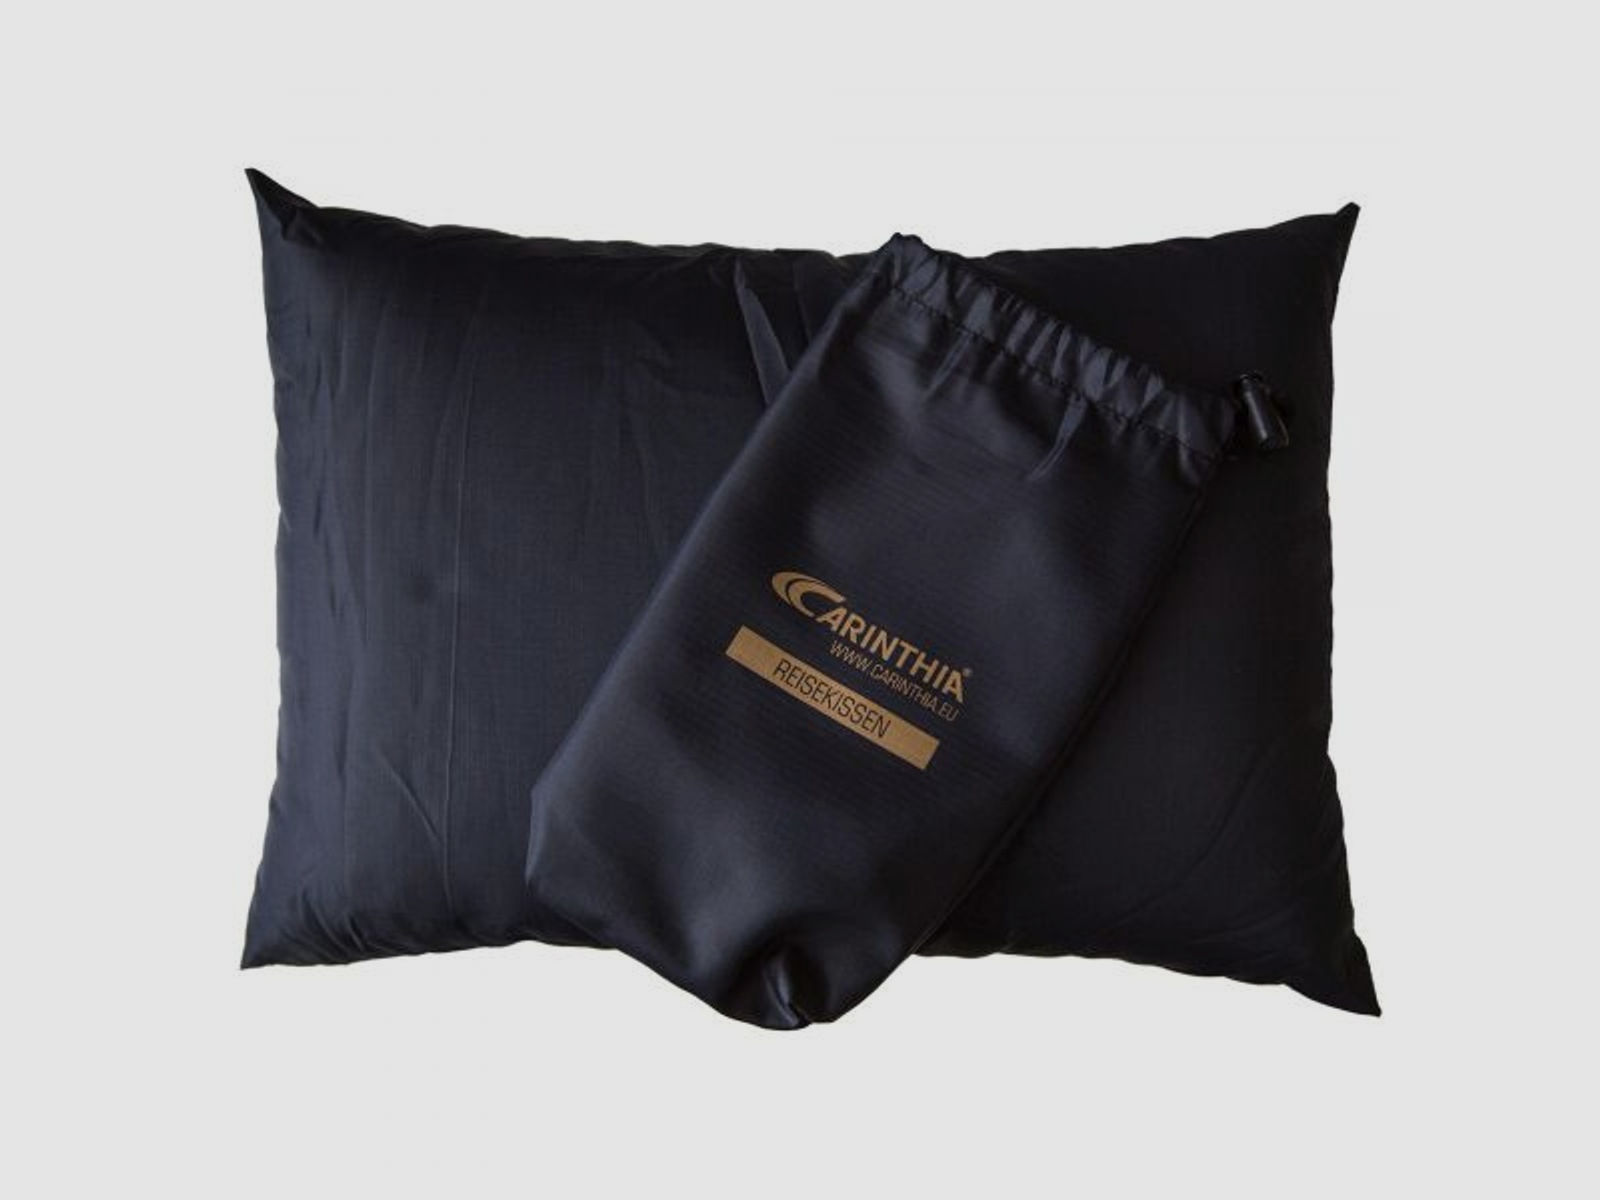 Carinthia Carinthia Kissen Travel Pillow schwarz